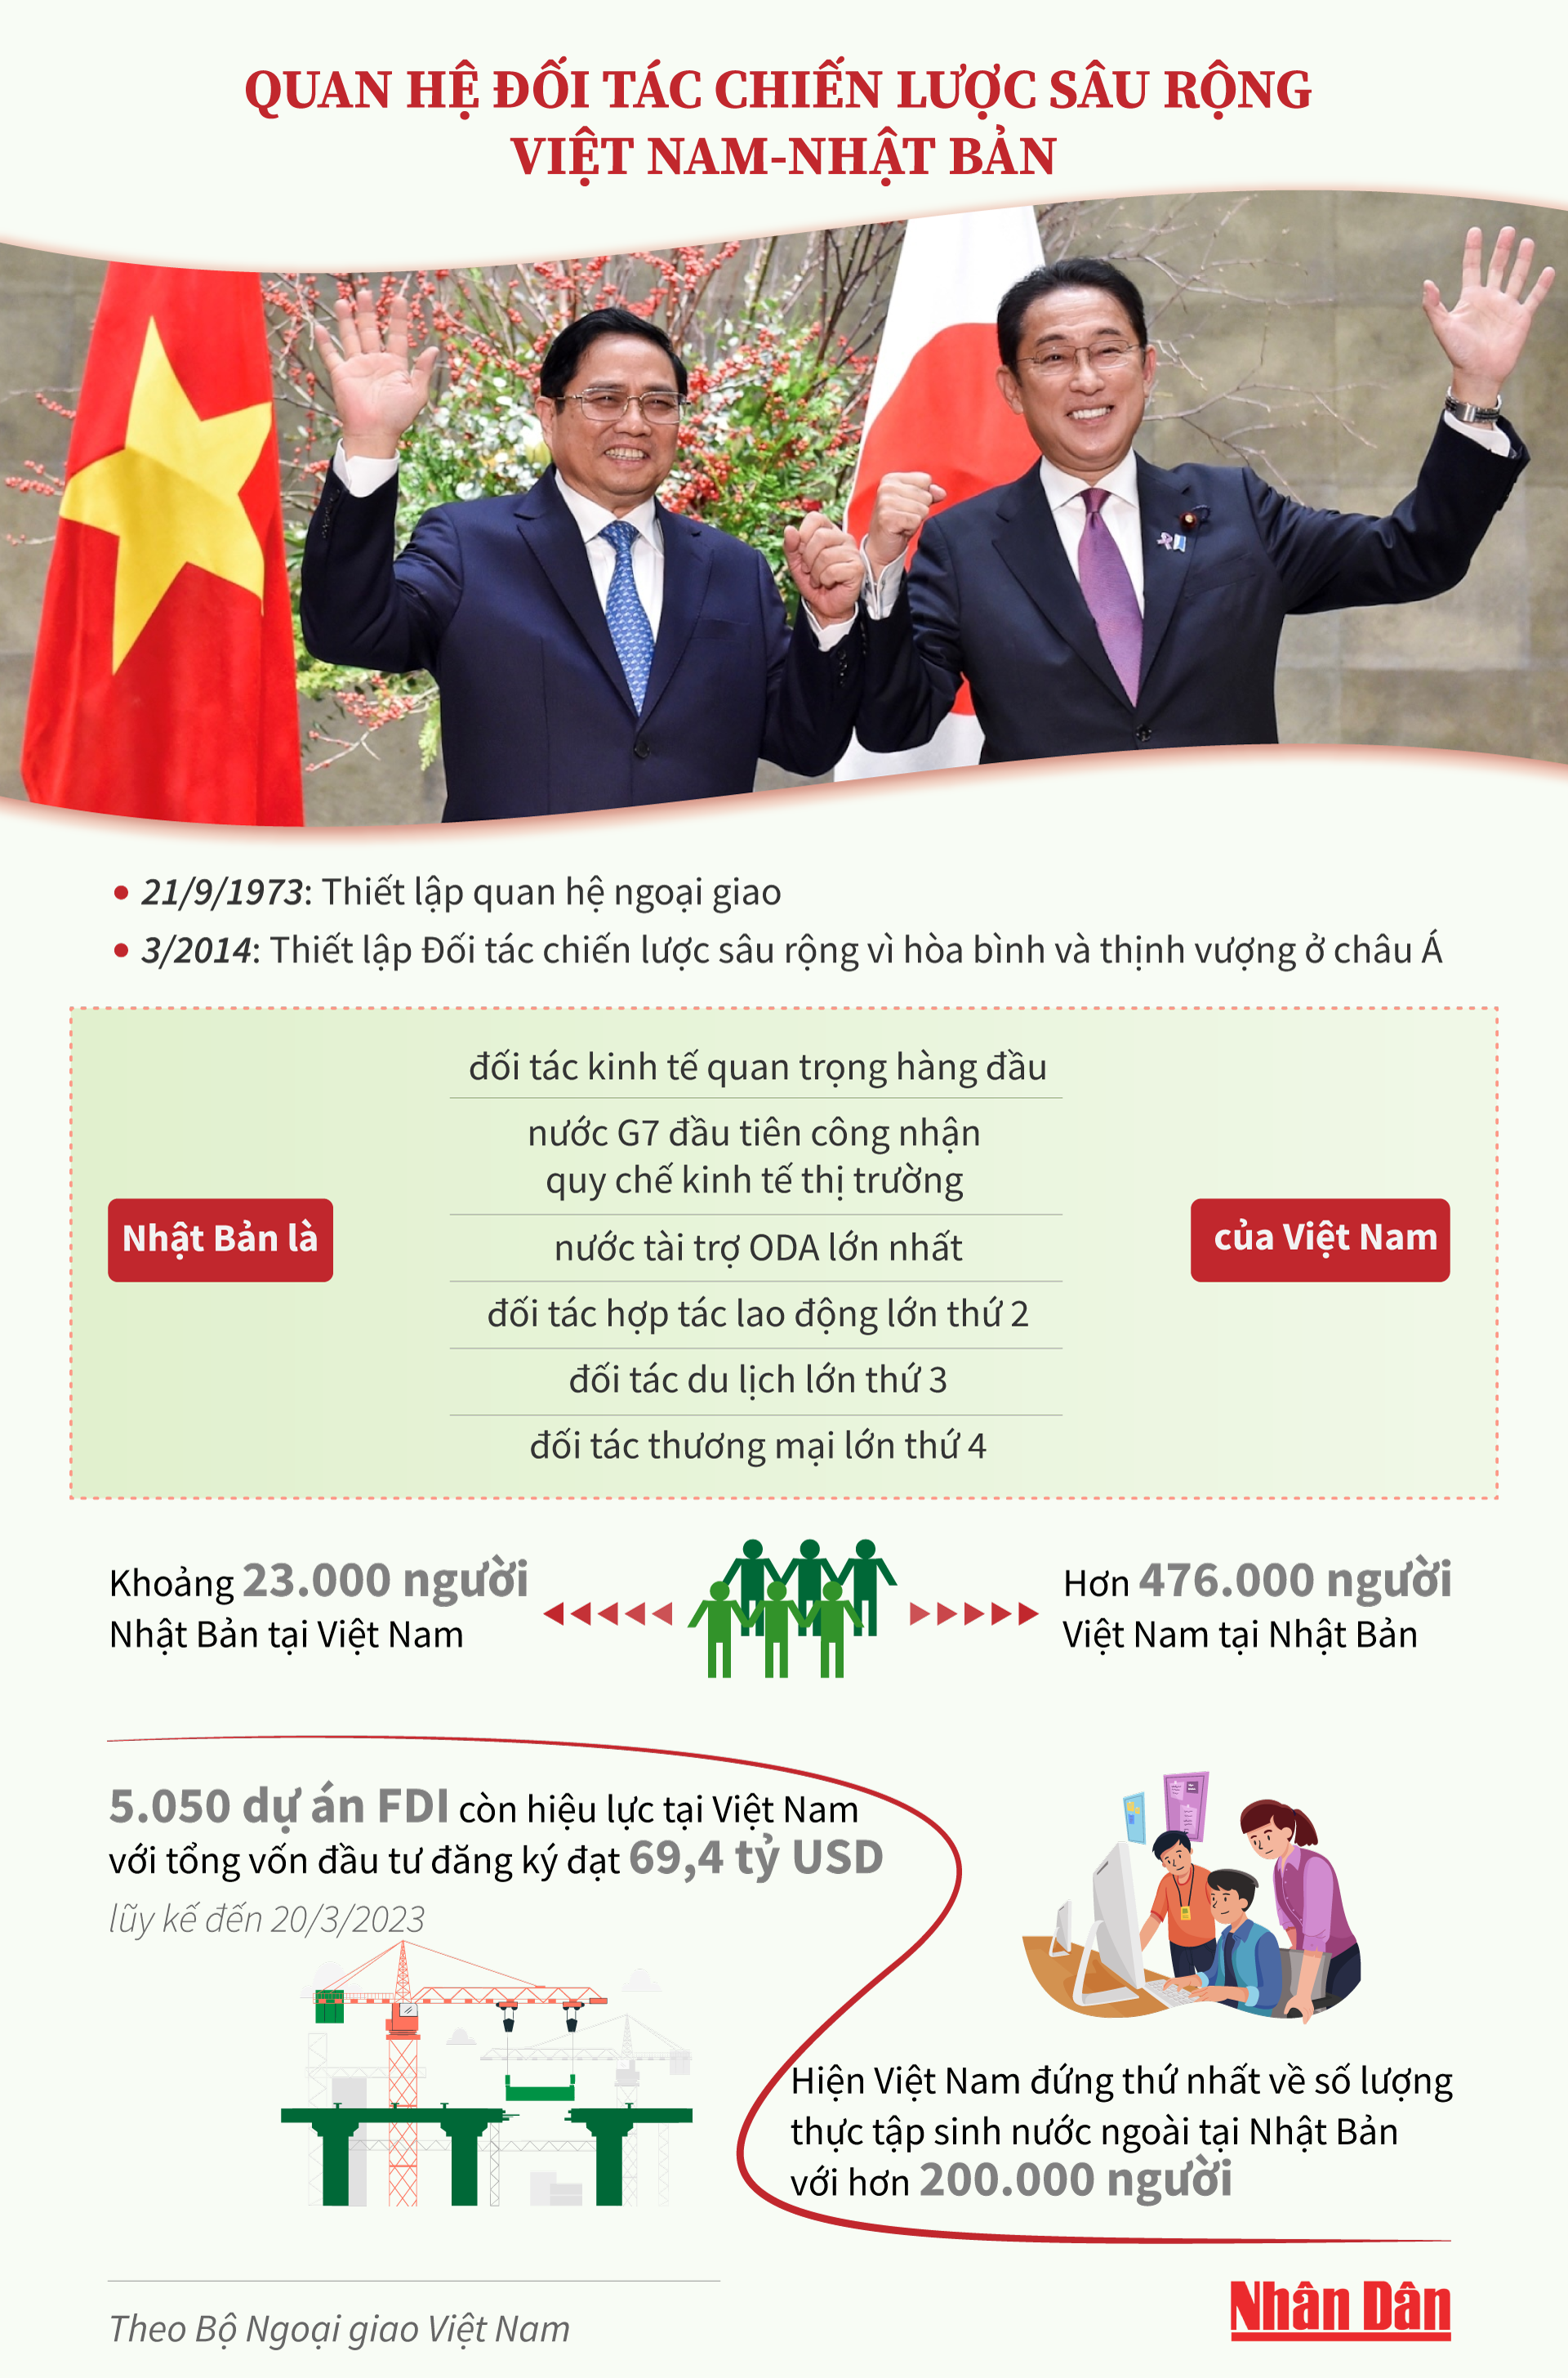 [Infographic] Quan hệ Đối tác chiến lược sâu rộng Việt Nam-Nhật Bản ảnh 1